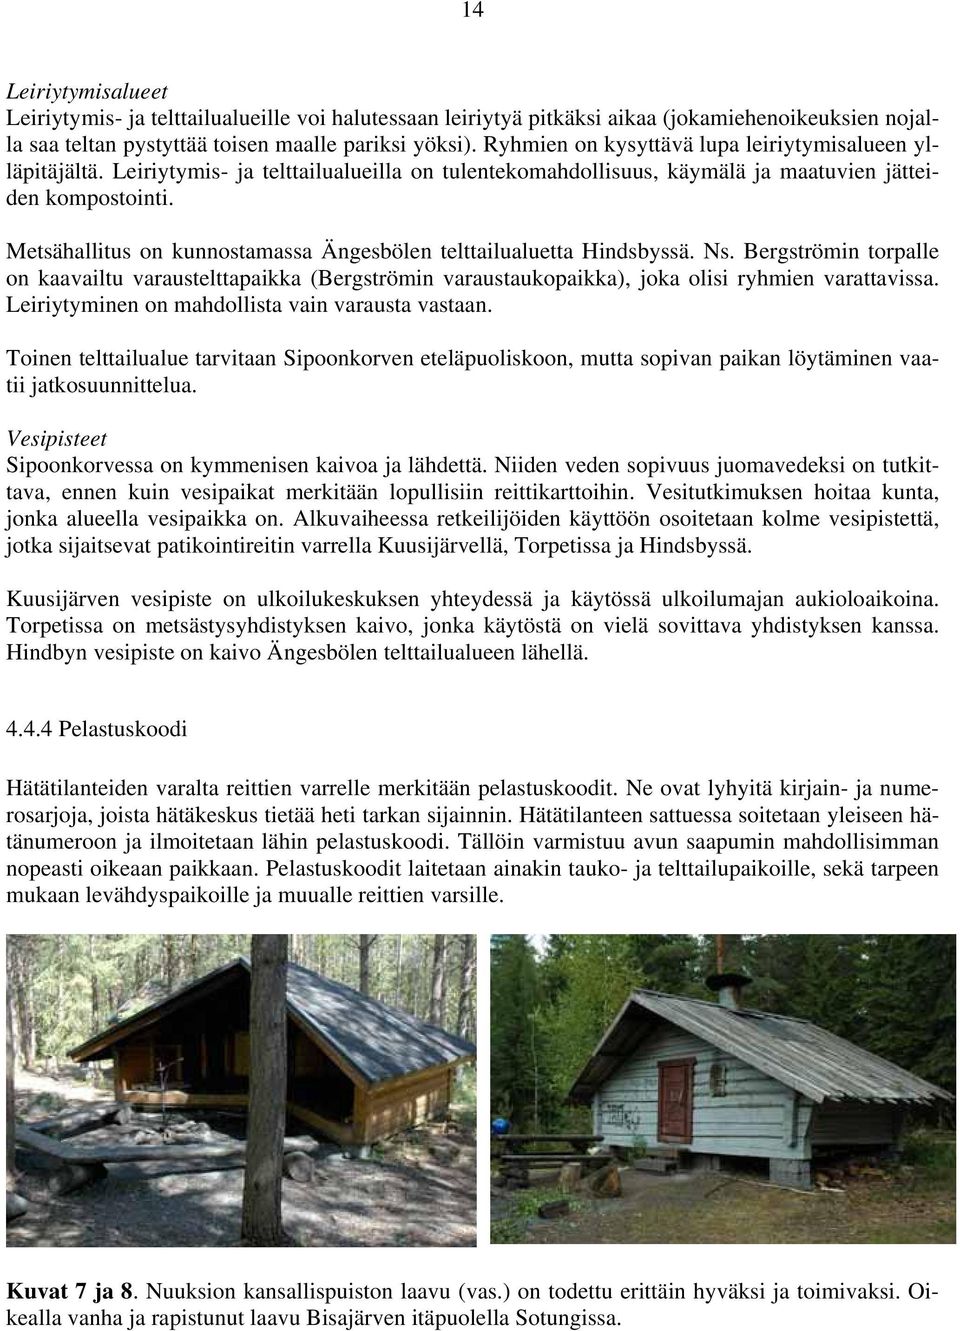 Metsähallitus on kunnostamassa Ängesbölen telttailualuetta Hindsbyssä. Ns. Bergströmin torpalle on kaavailtu varaustelttapaikka (Bergströmin varaustaukopaikka), joka olisi ryhmien varattavissa.